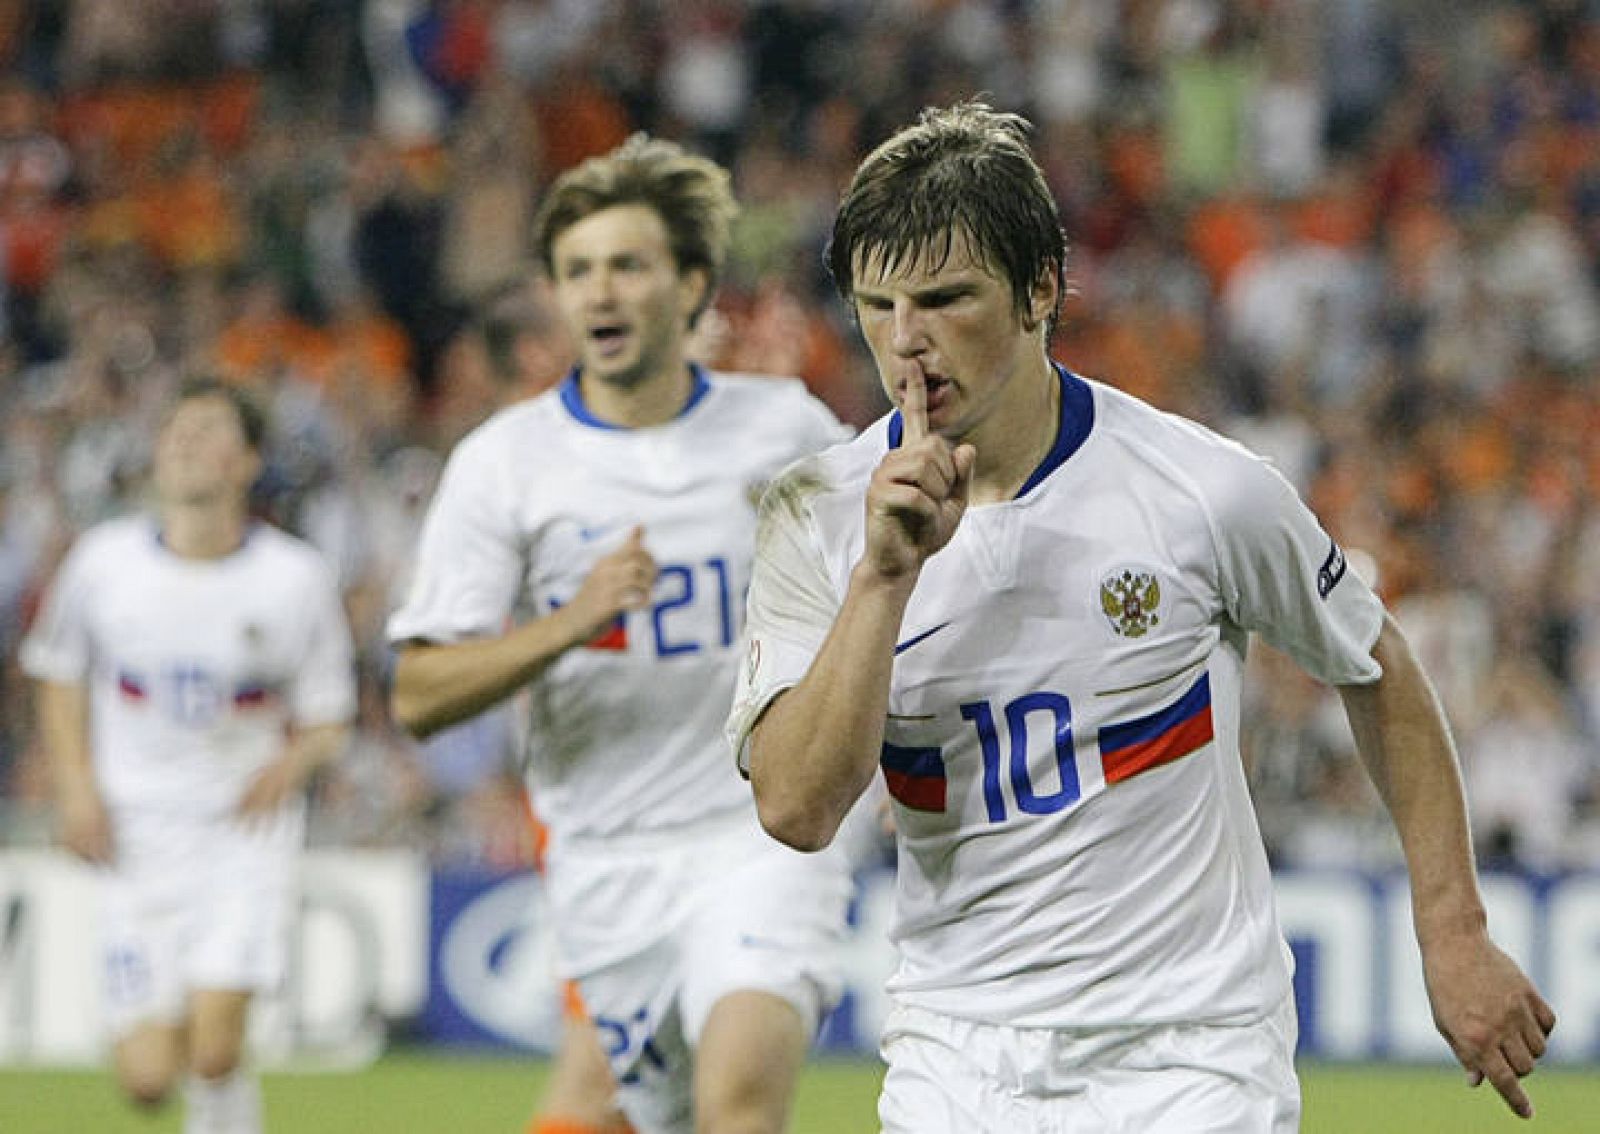 El gran partido de Arshavin en los cuartos de final contra Holanda le ha convertido en una emergente estrella del fútbol.